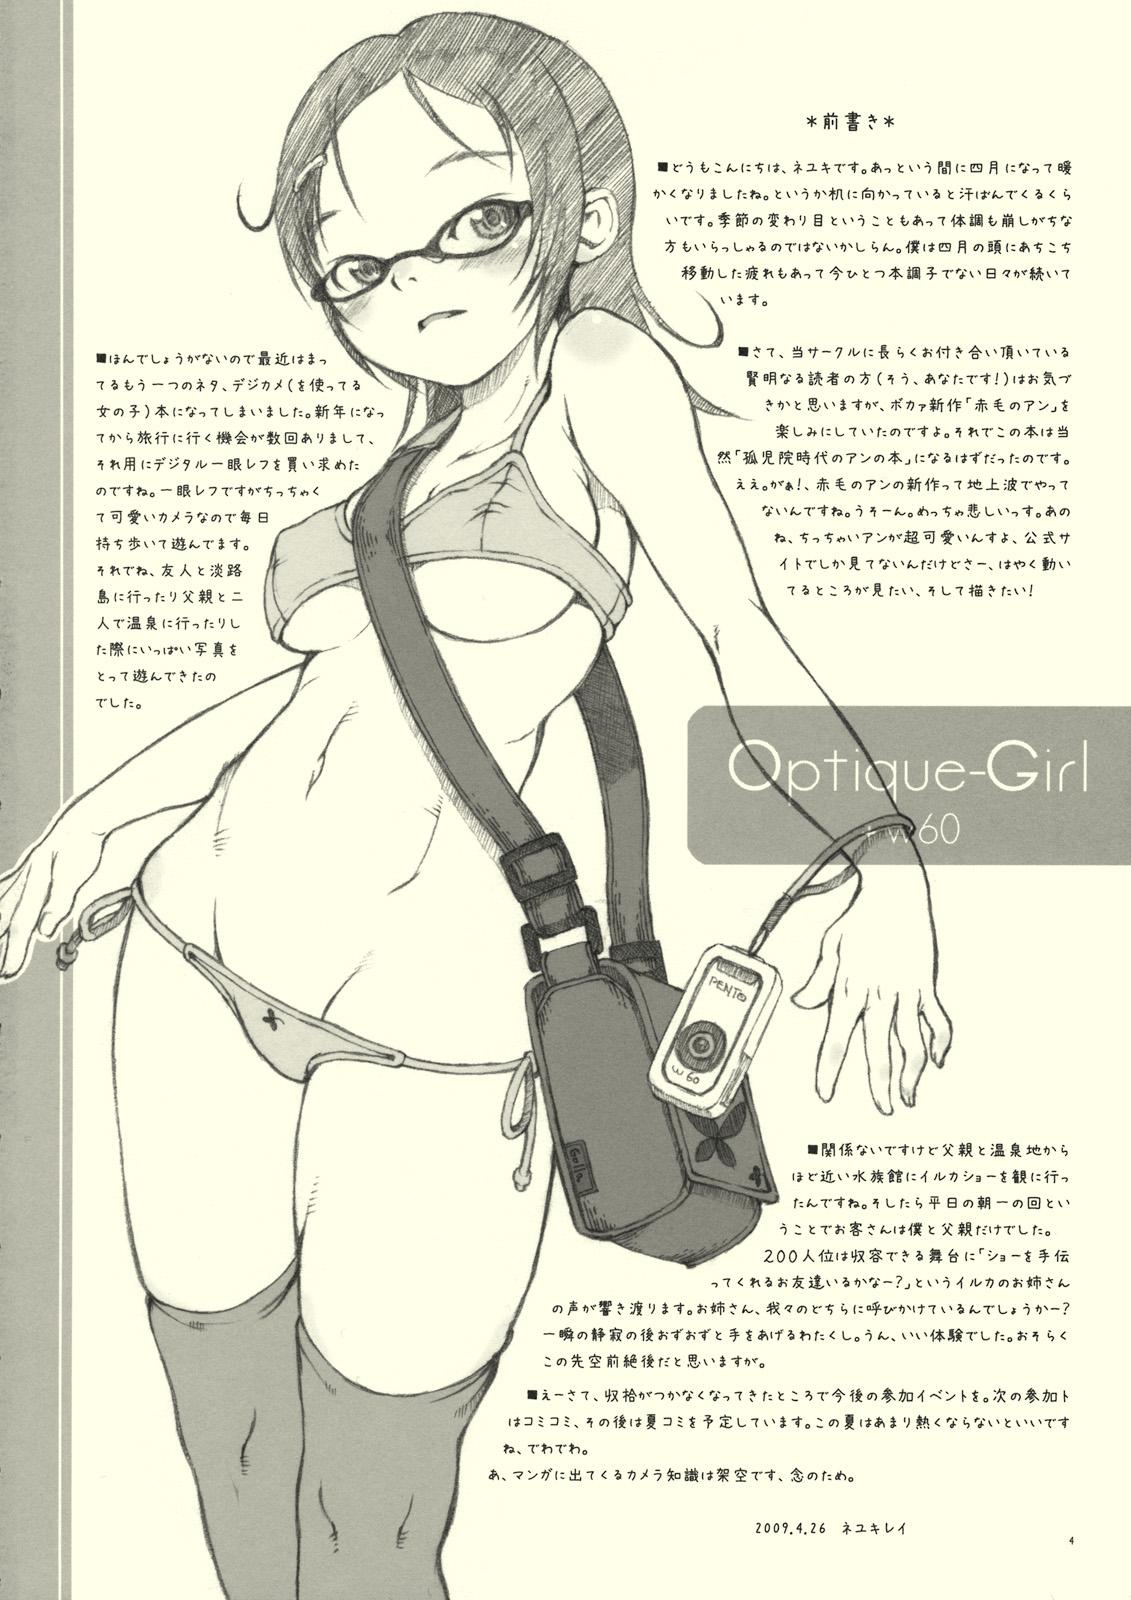 Optique-Girl 2